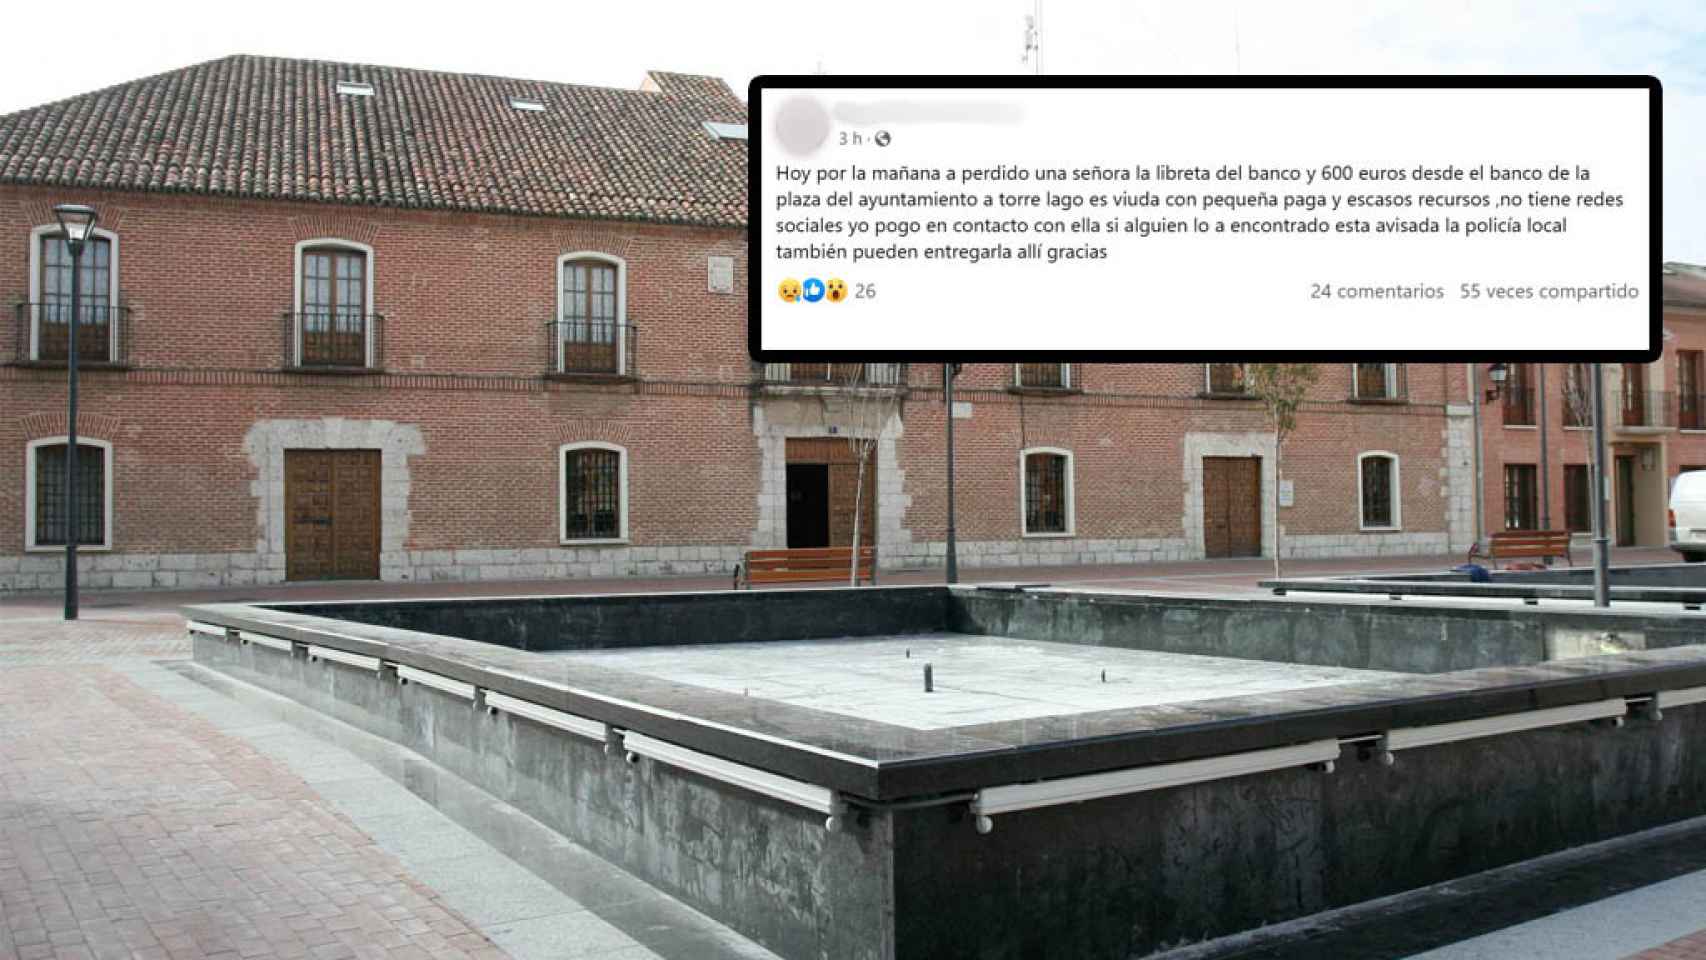 La Plaza Mayor de Laguna de Duero y la publicación en Facebook